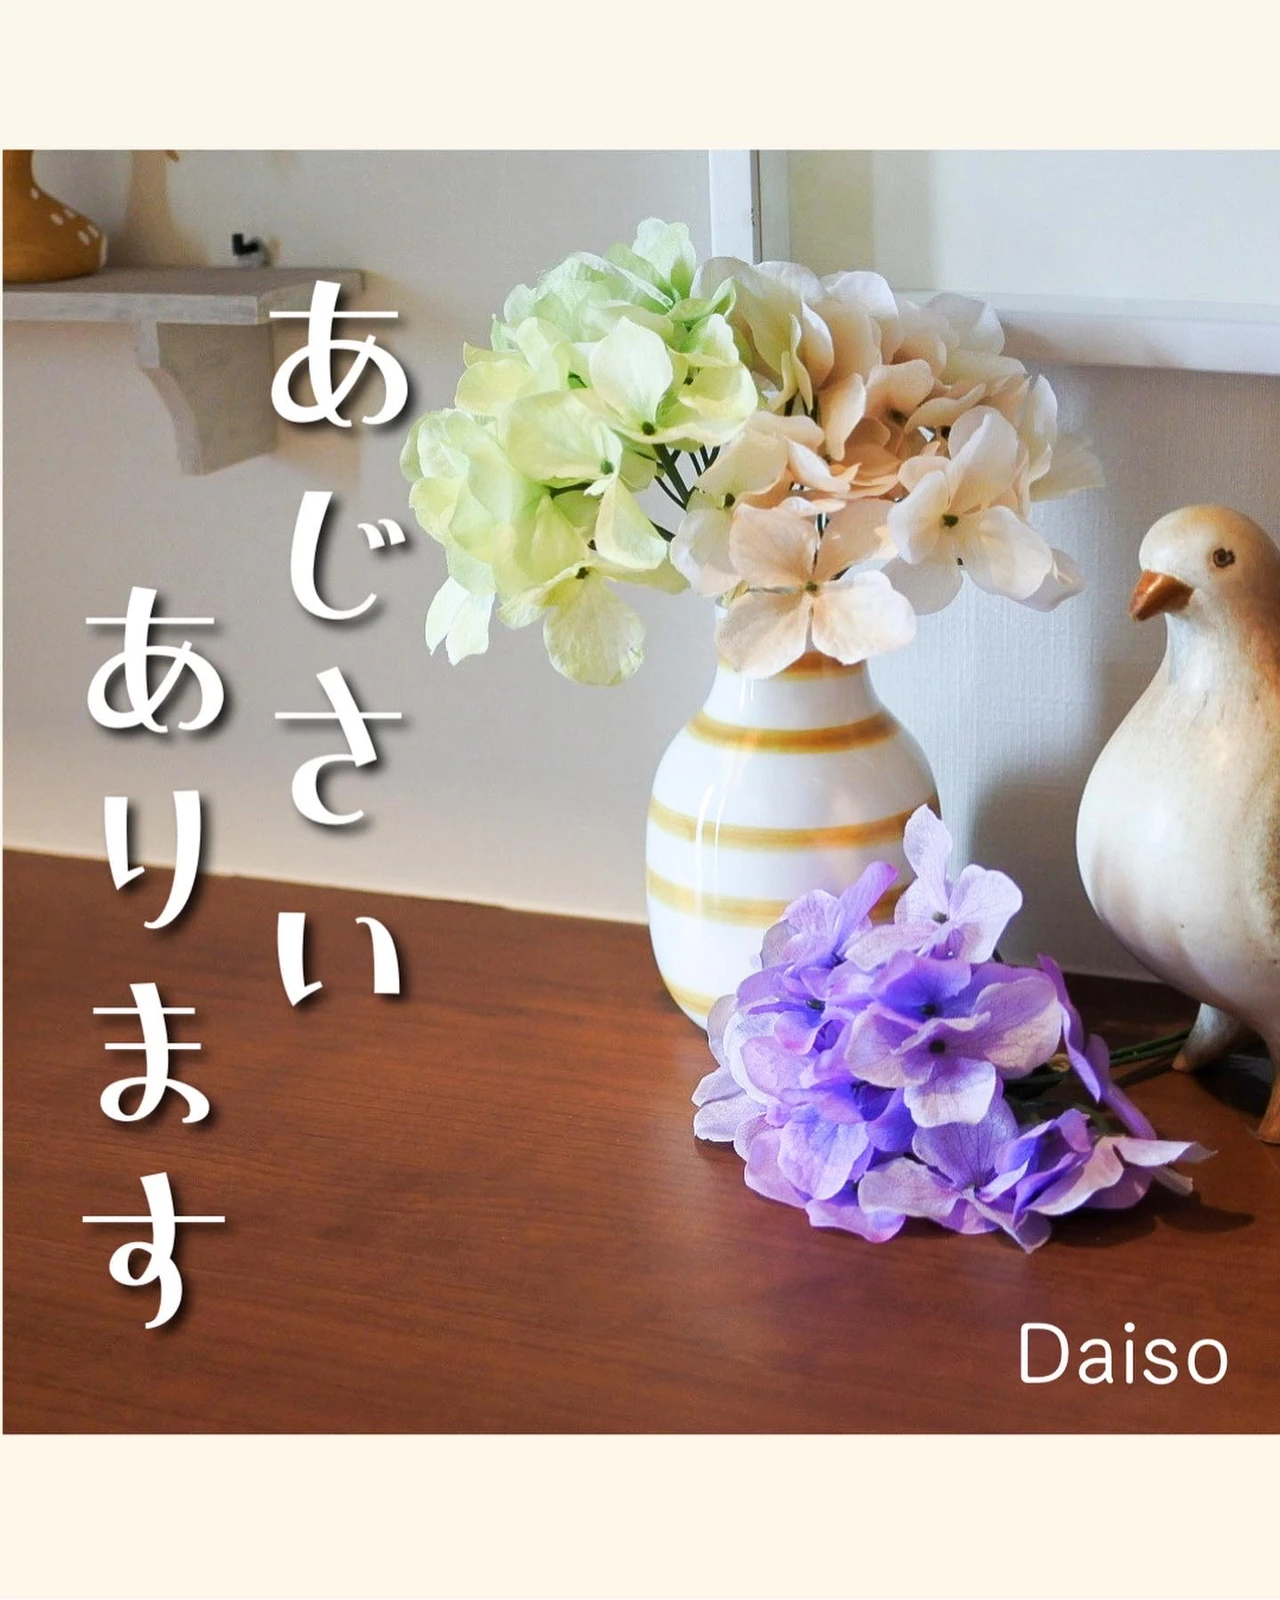 ダイソーのリアルな紫陽花 よ い こが投稿したフォトブック Lemon8